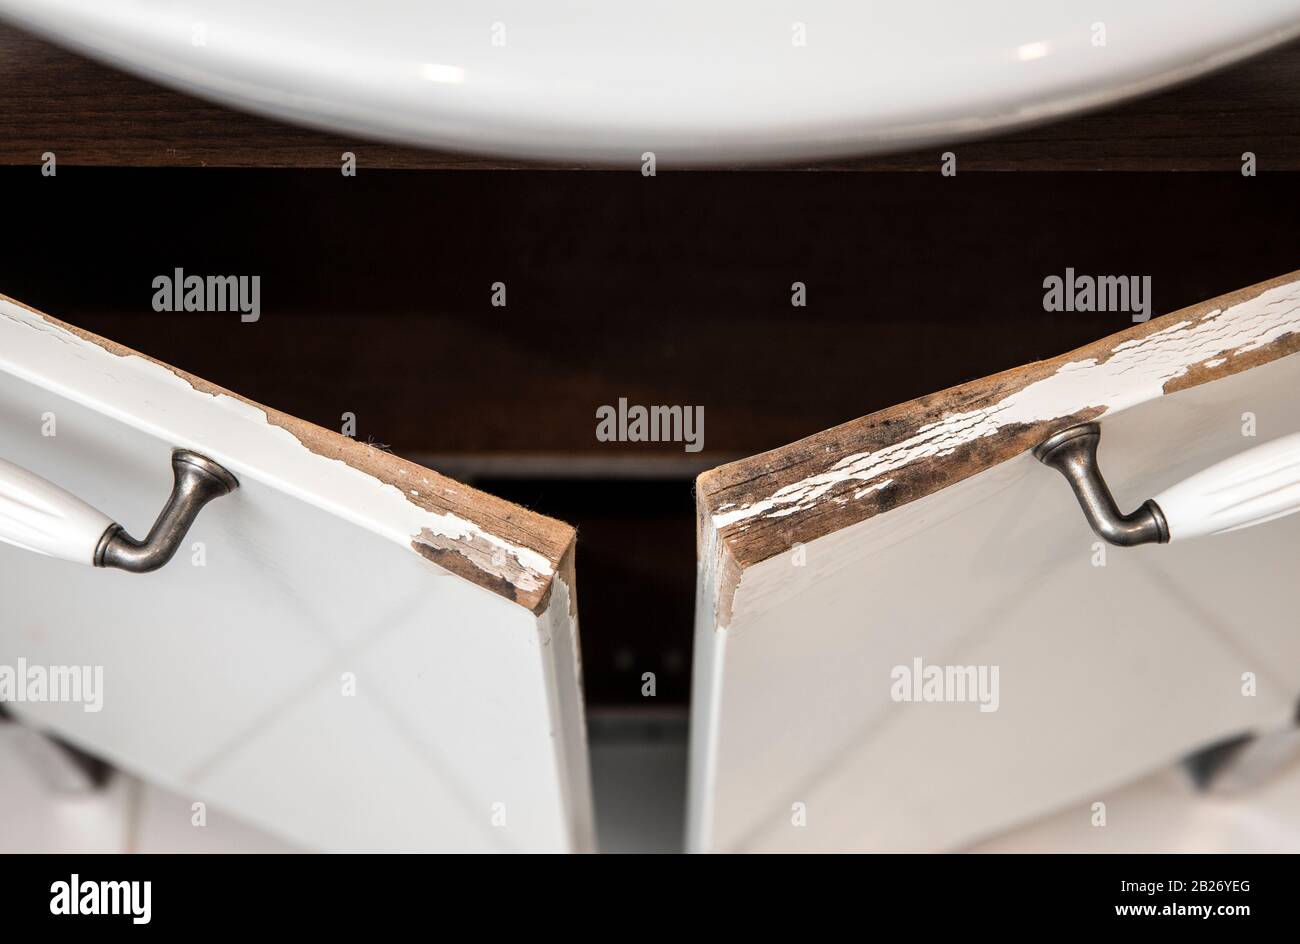 Meuble-lavabo de salle de bains en MDF blanc brillant endommagé par l'eau avec moulure. Concept d'état de salle de bains humide. Banque D'Images